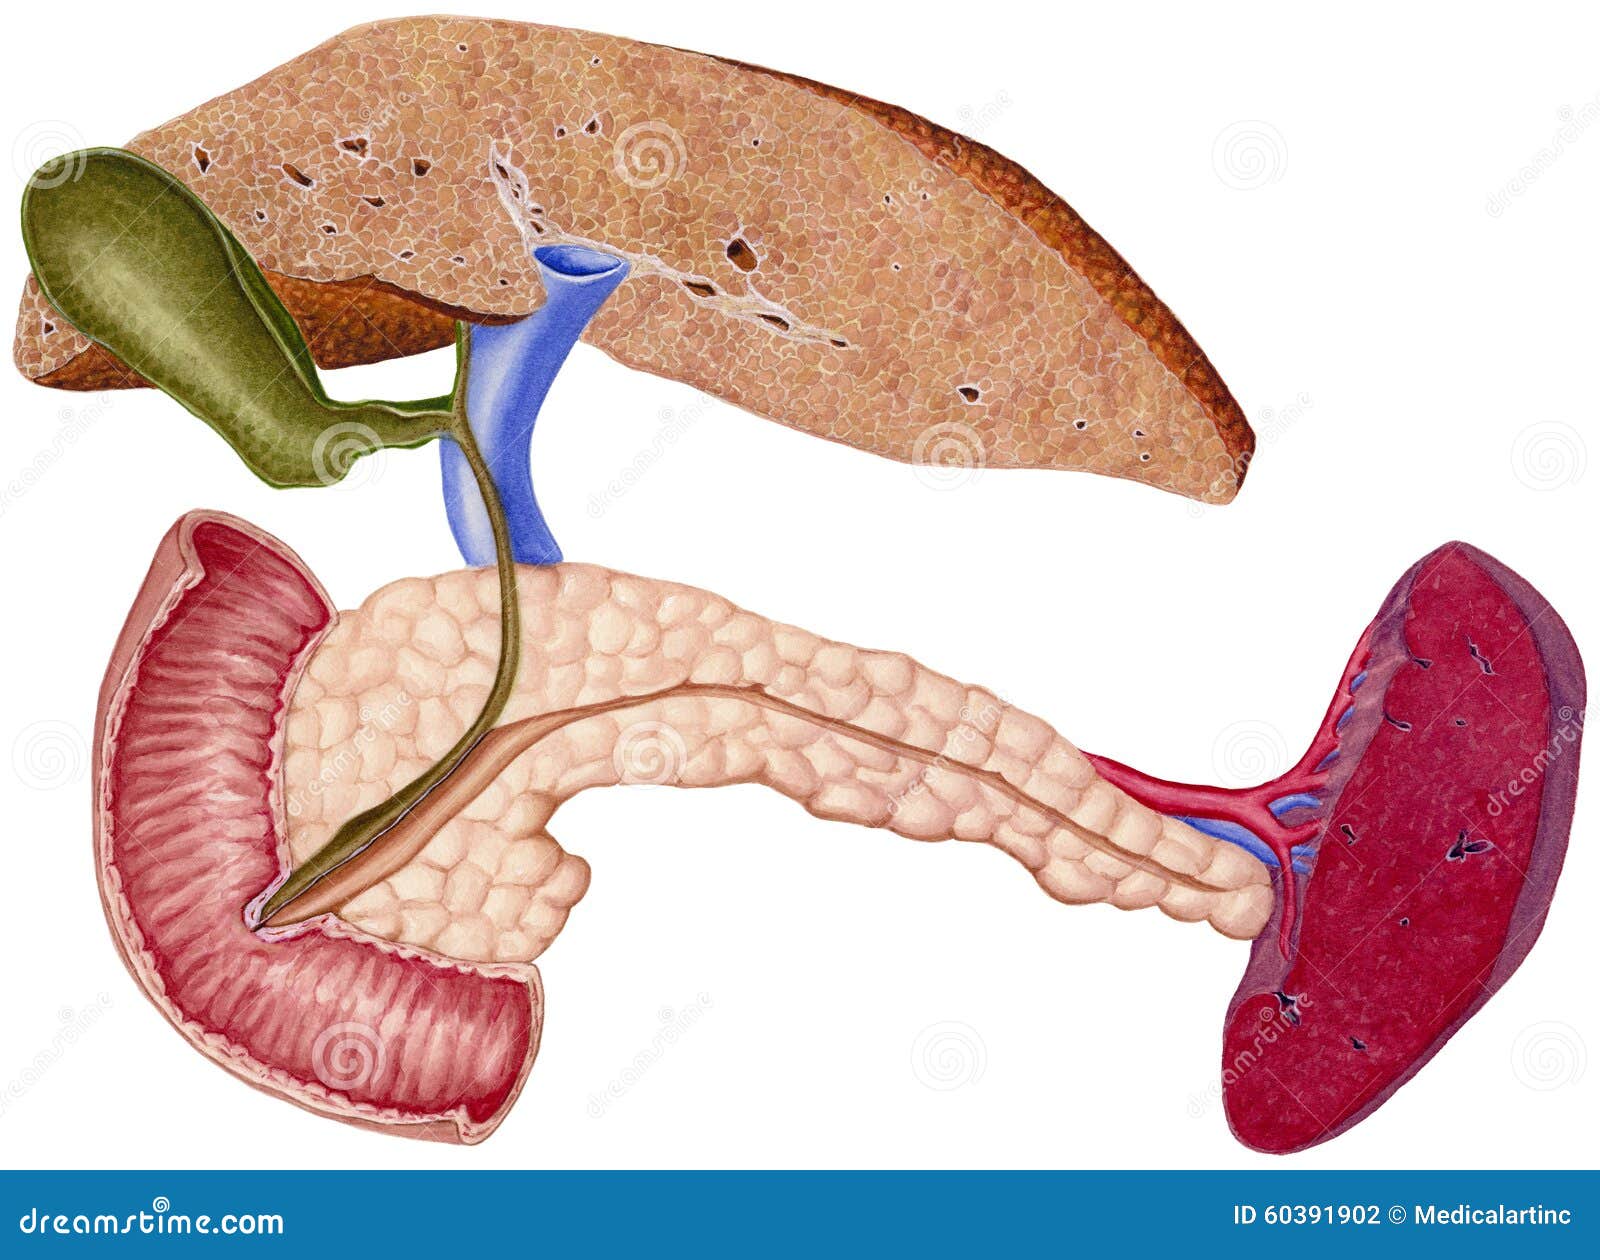 liver - cirrhosis